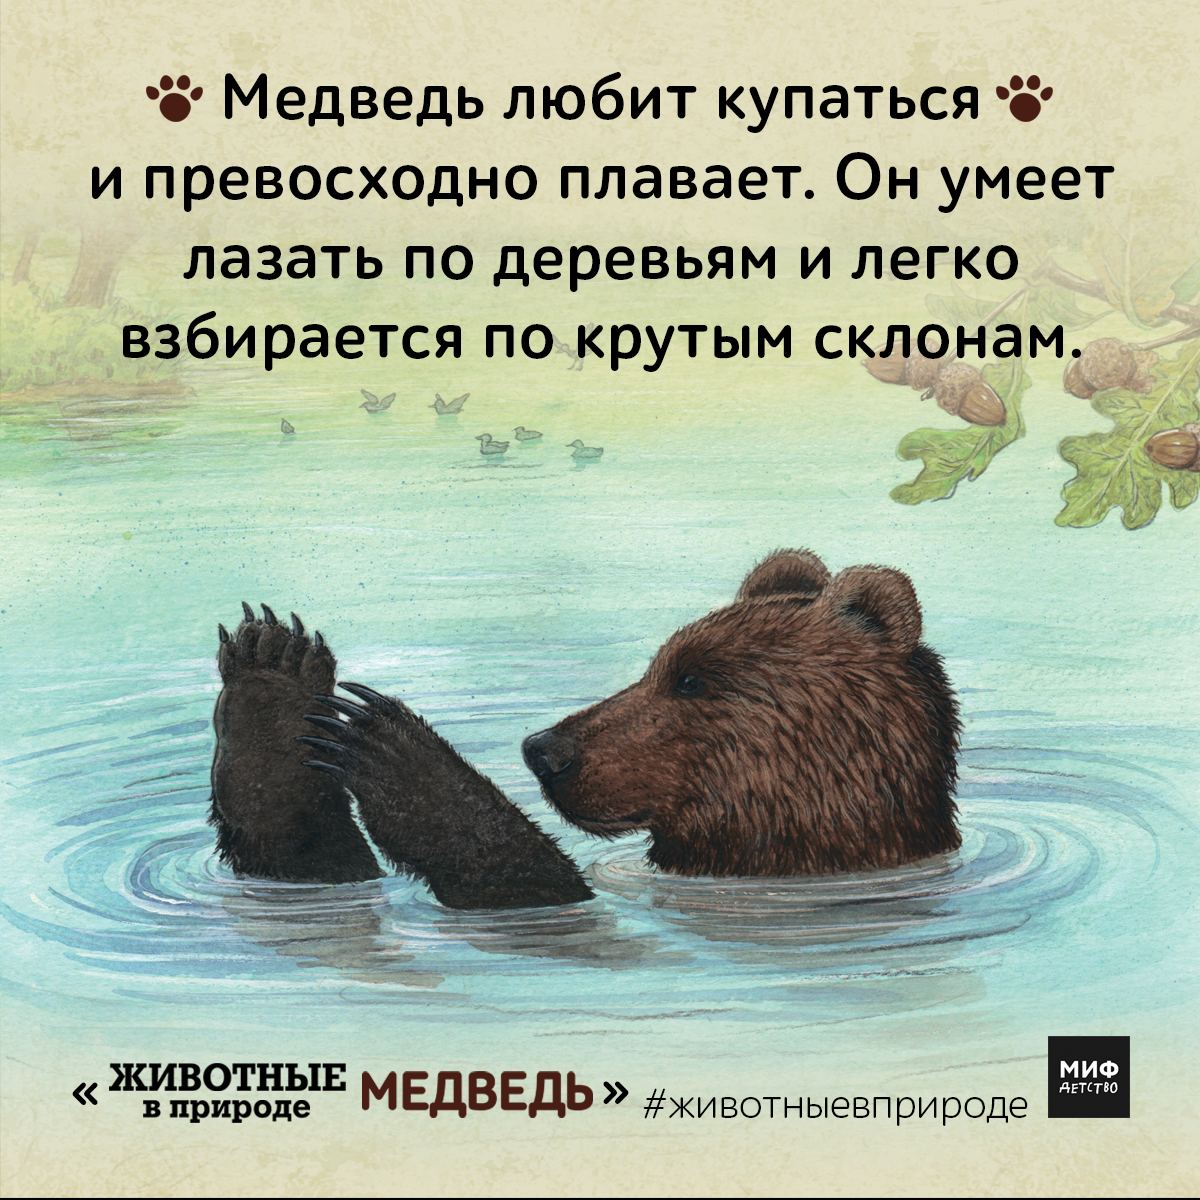 Медведь плавает скорость. Что любит медведь. Медведи любят купаться. Медвежонку Нравится купаться. Любящий медведь.